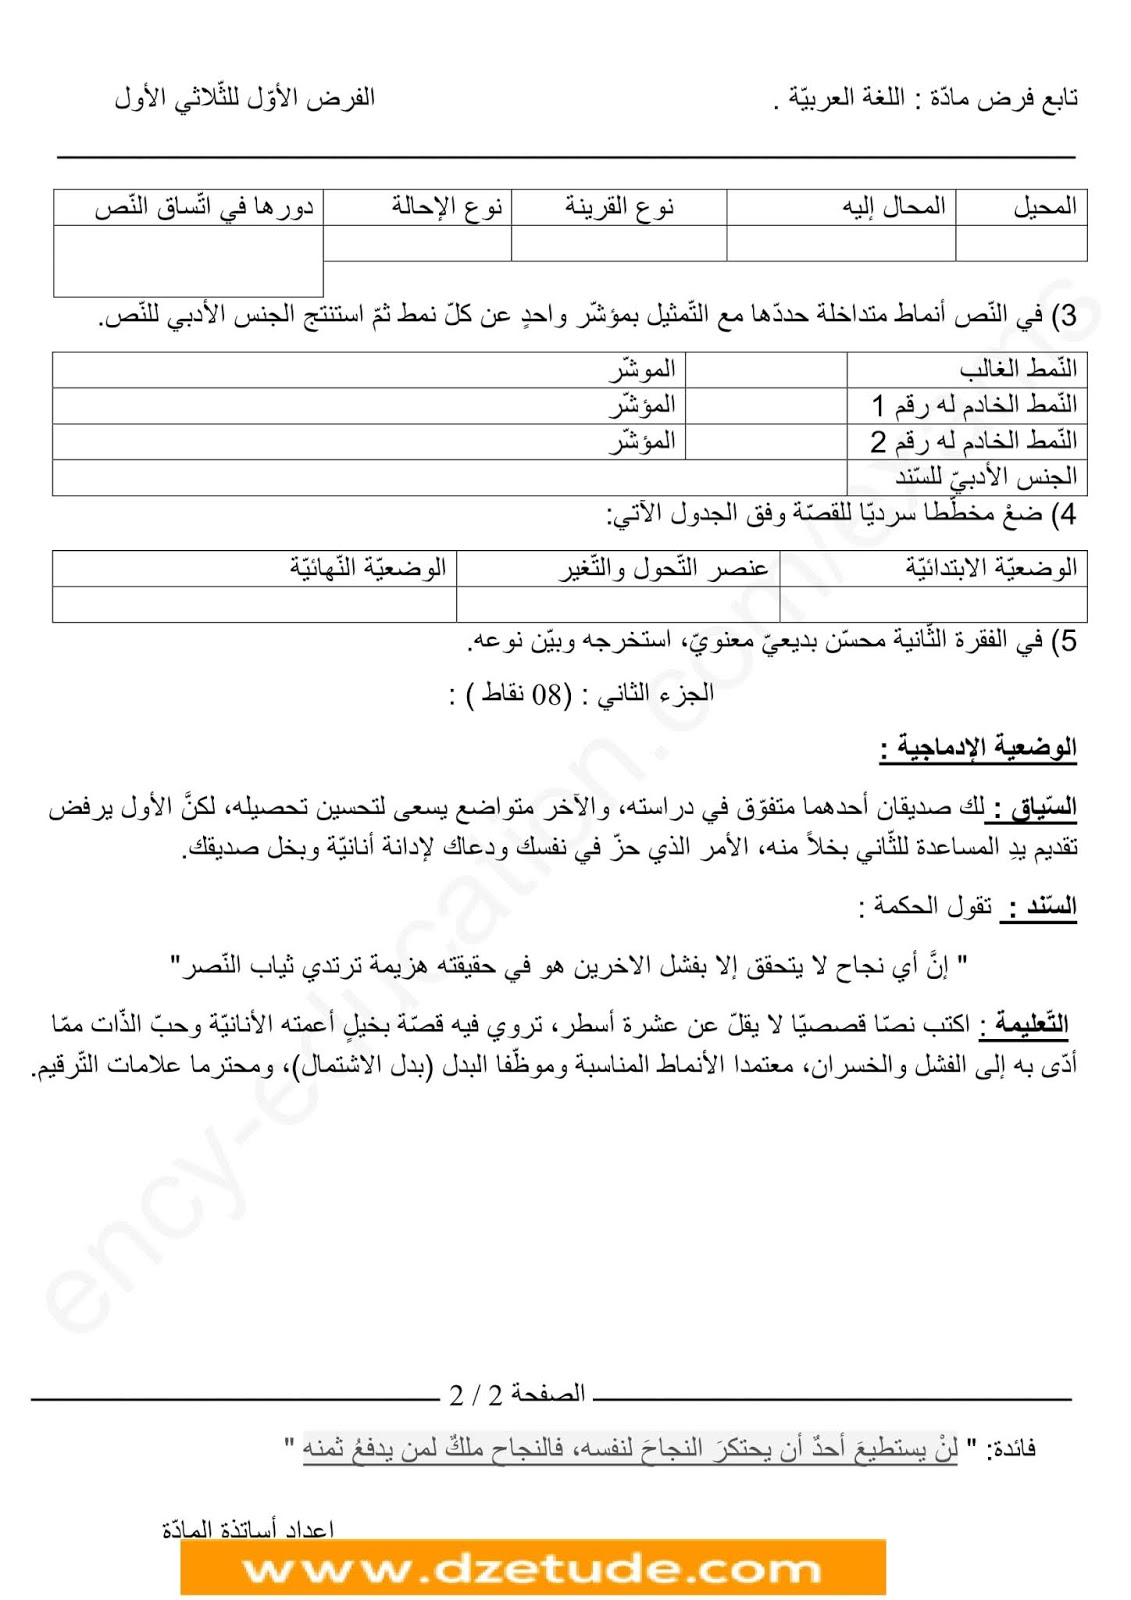 فرض الفصل الأول في اللغة العربية للسنة الرابعة متوسط - الجيل الثاني نموذج 4